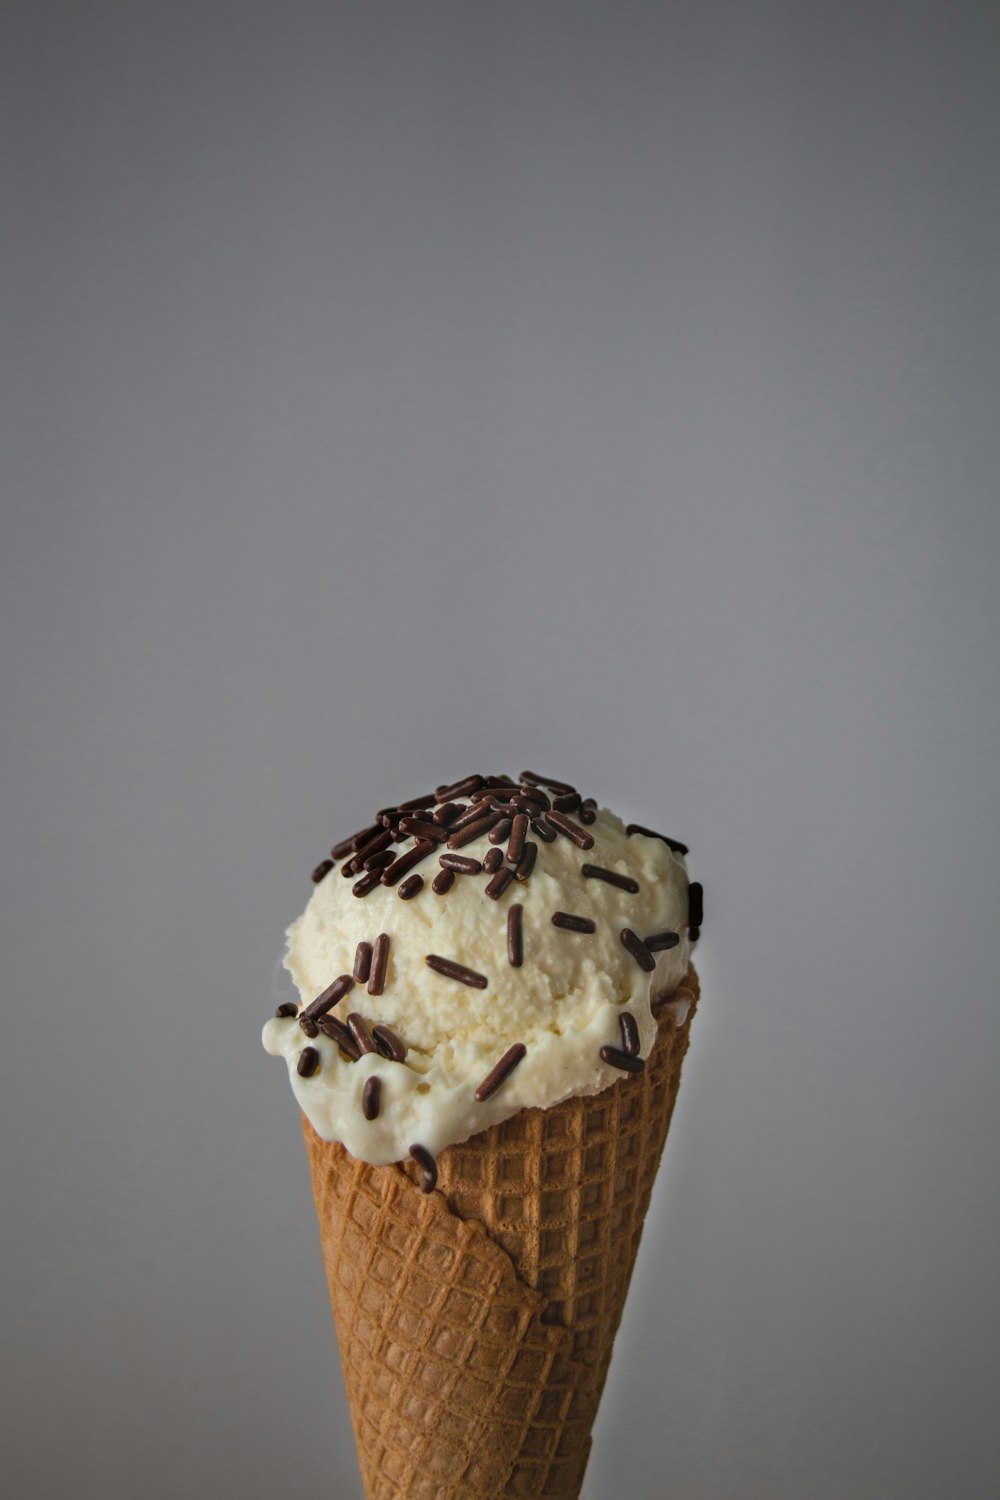 갈색 콘에 흰색 아이스크림